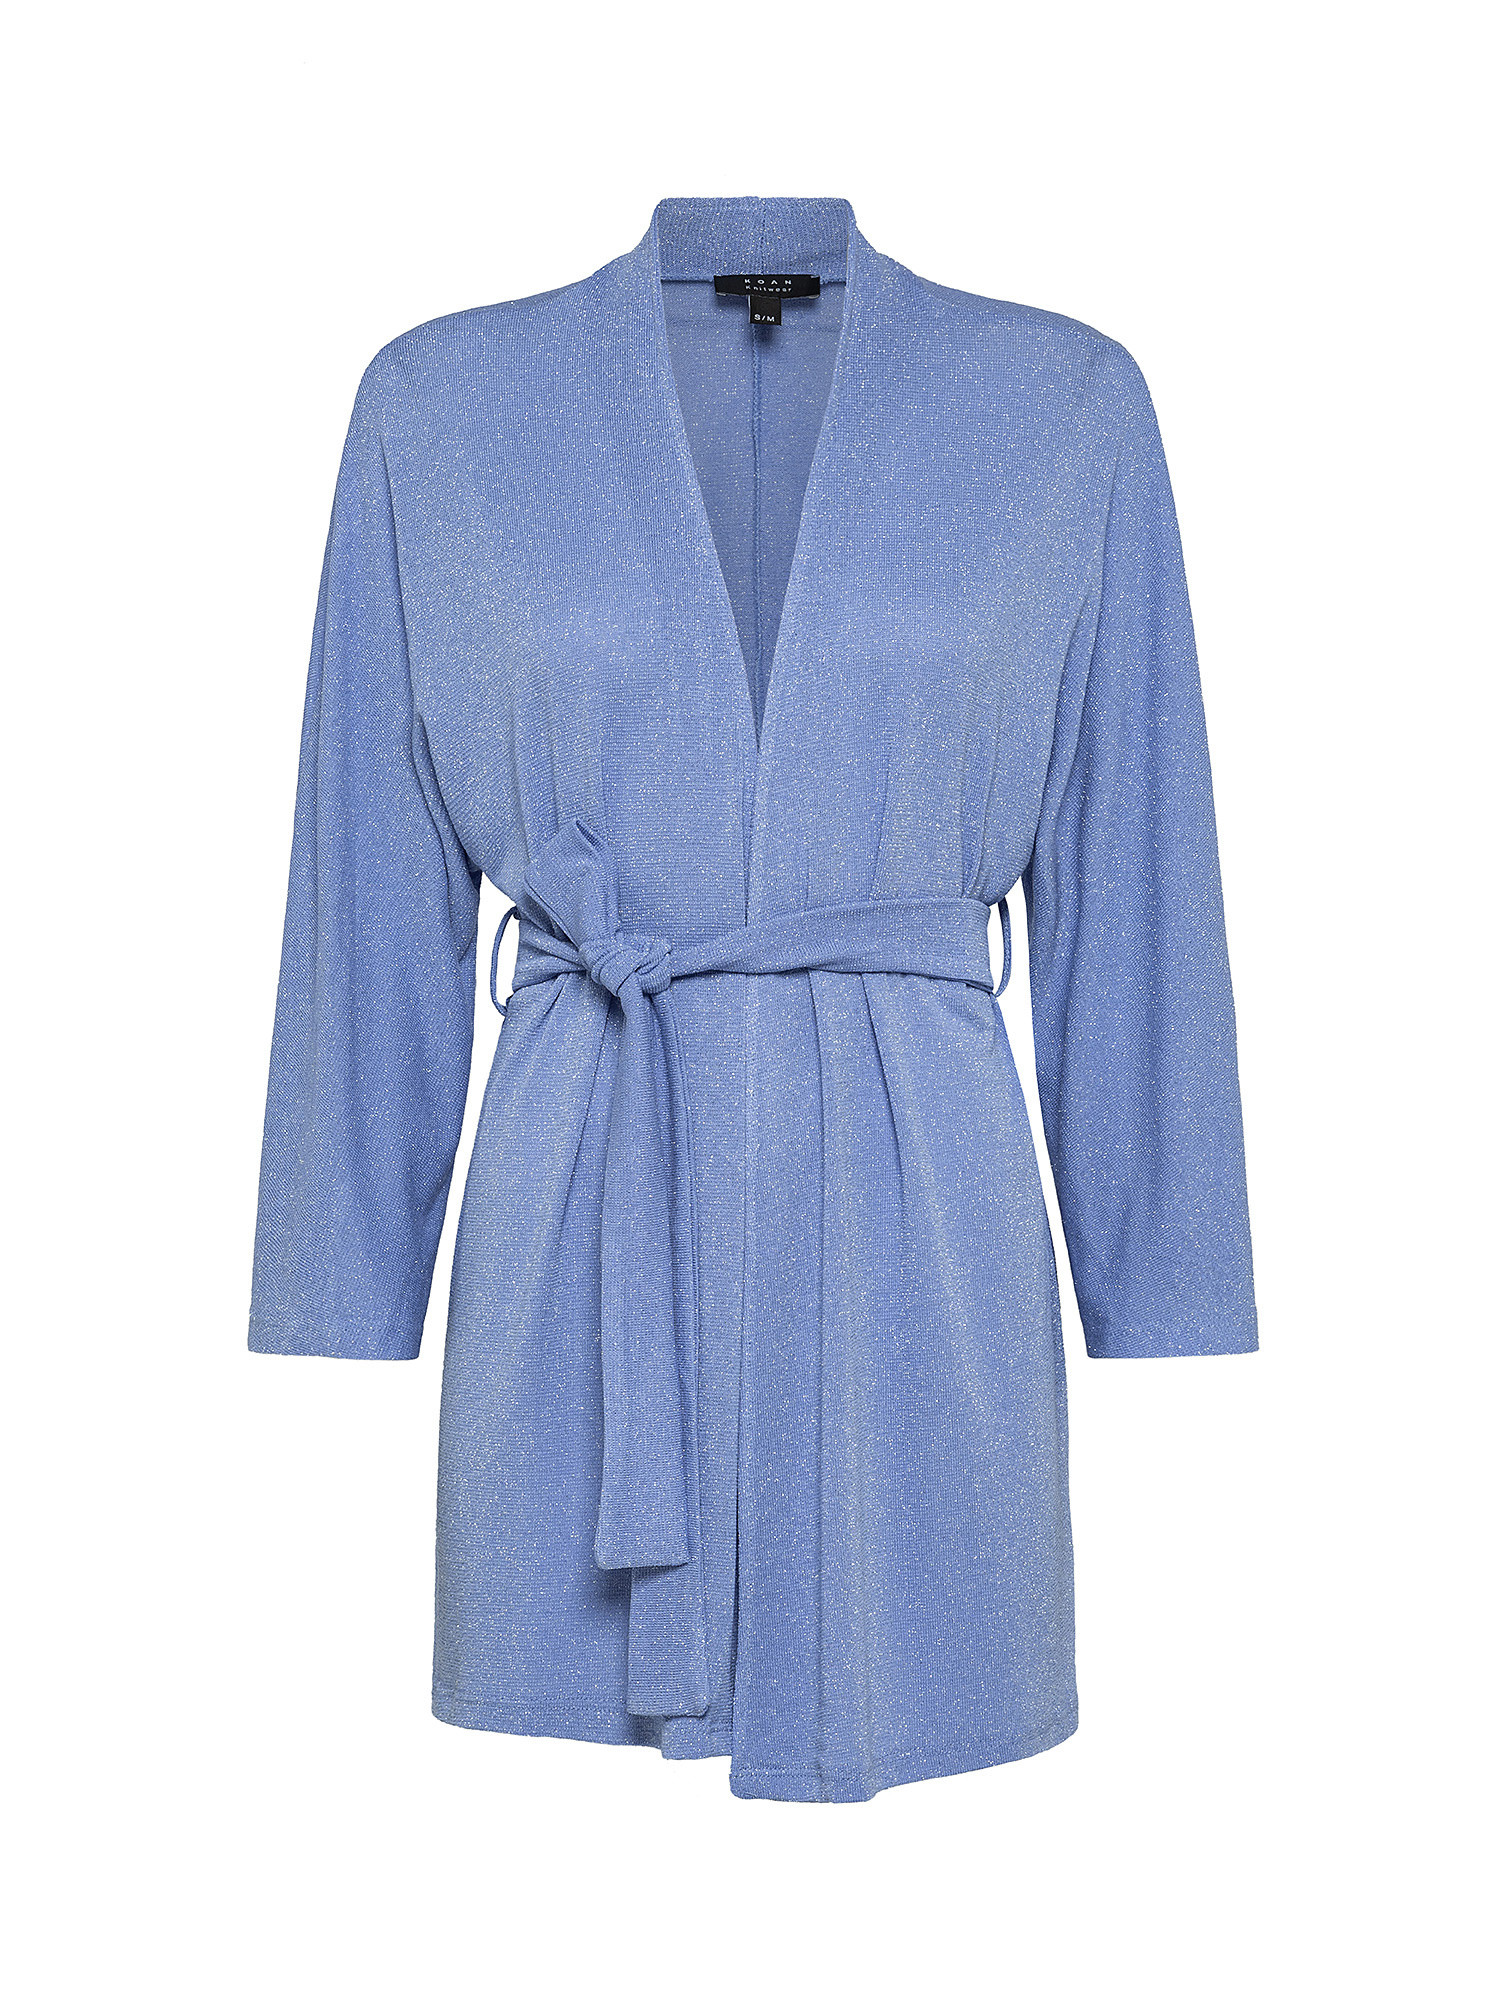 Kimono cardigan, Blue Celeste, large image number 0